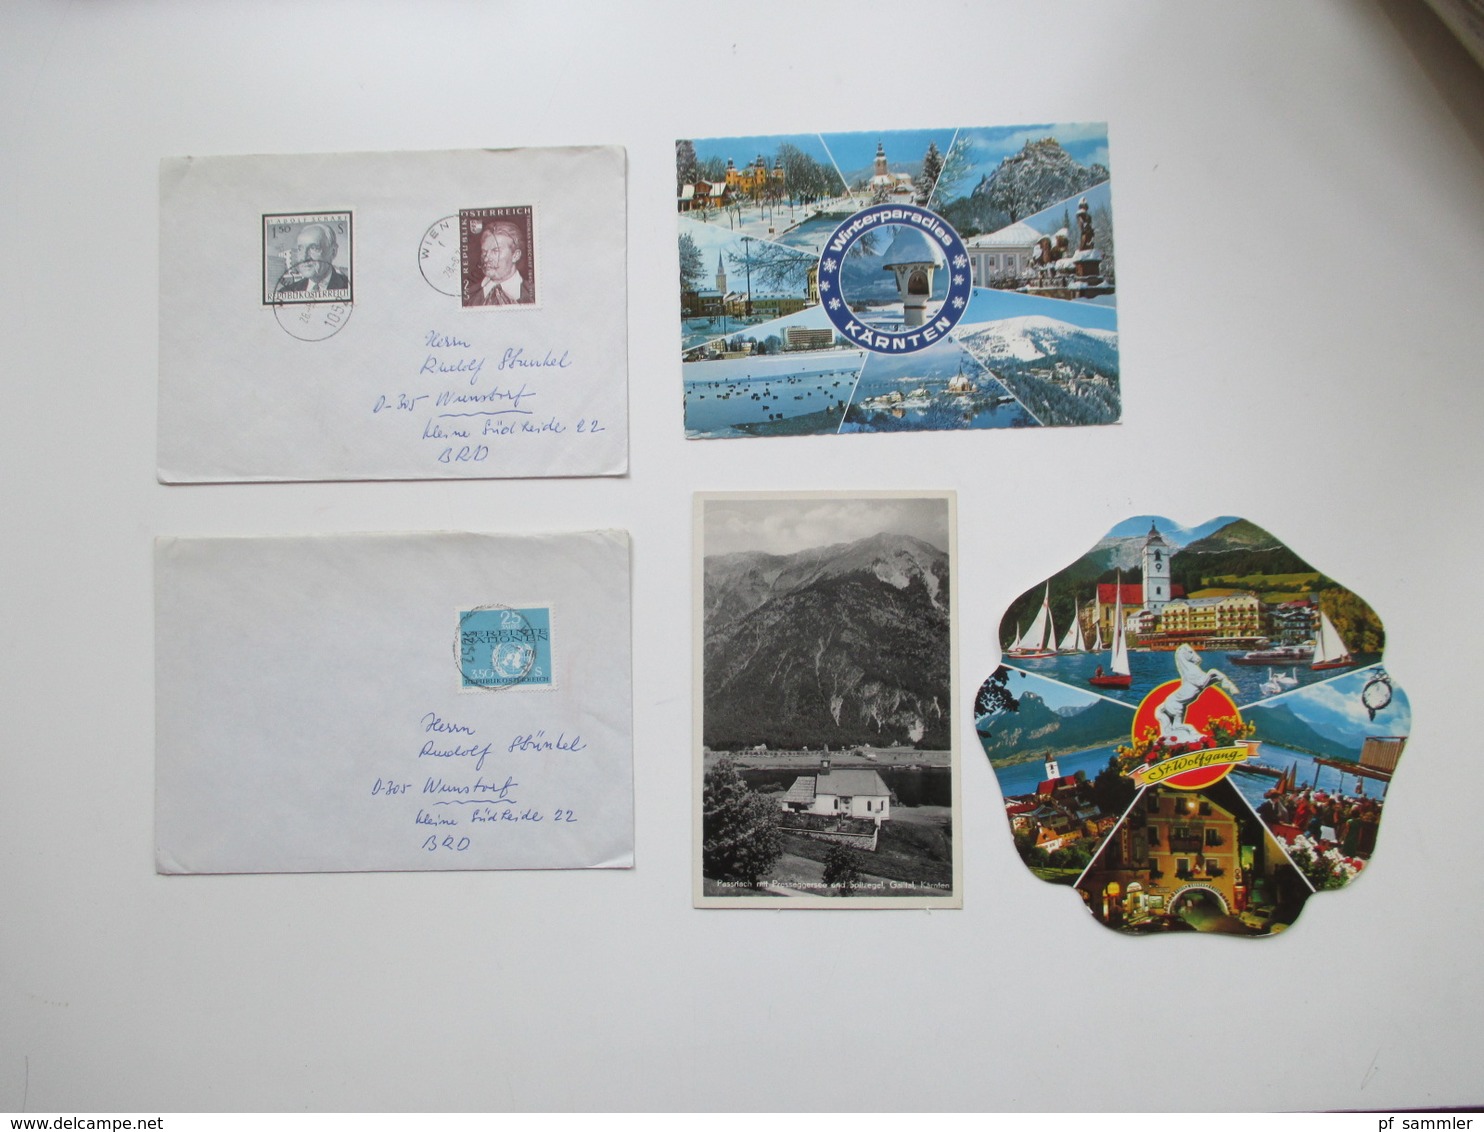 Österreich ab 1877 bis 1970er Jahre Belege / Postkarten / GA. Stöberposten. Viel 1950/60er Jahre! FDC / Bedarf.